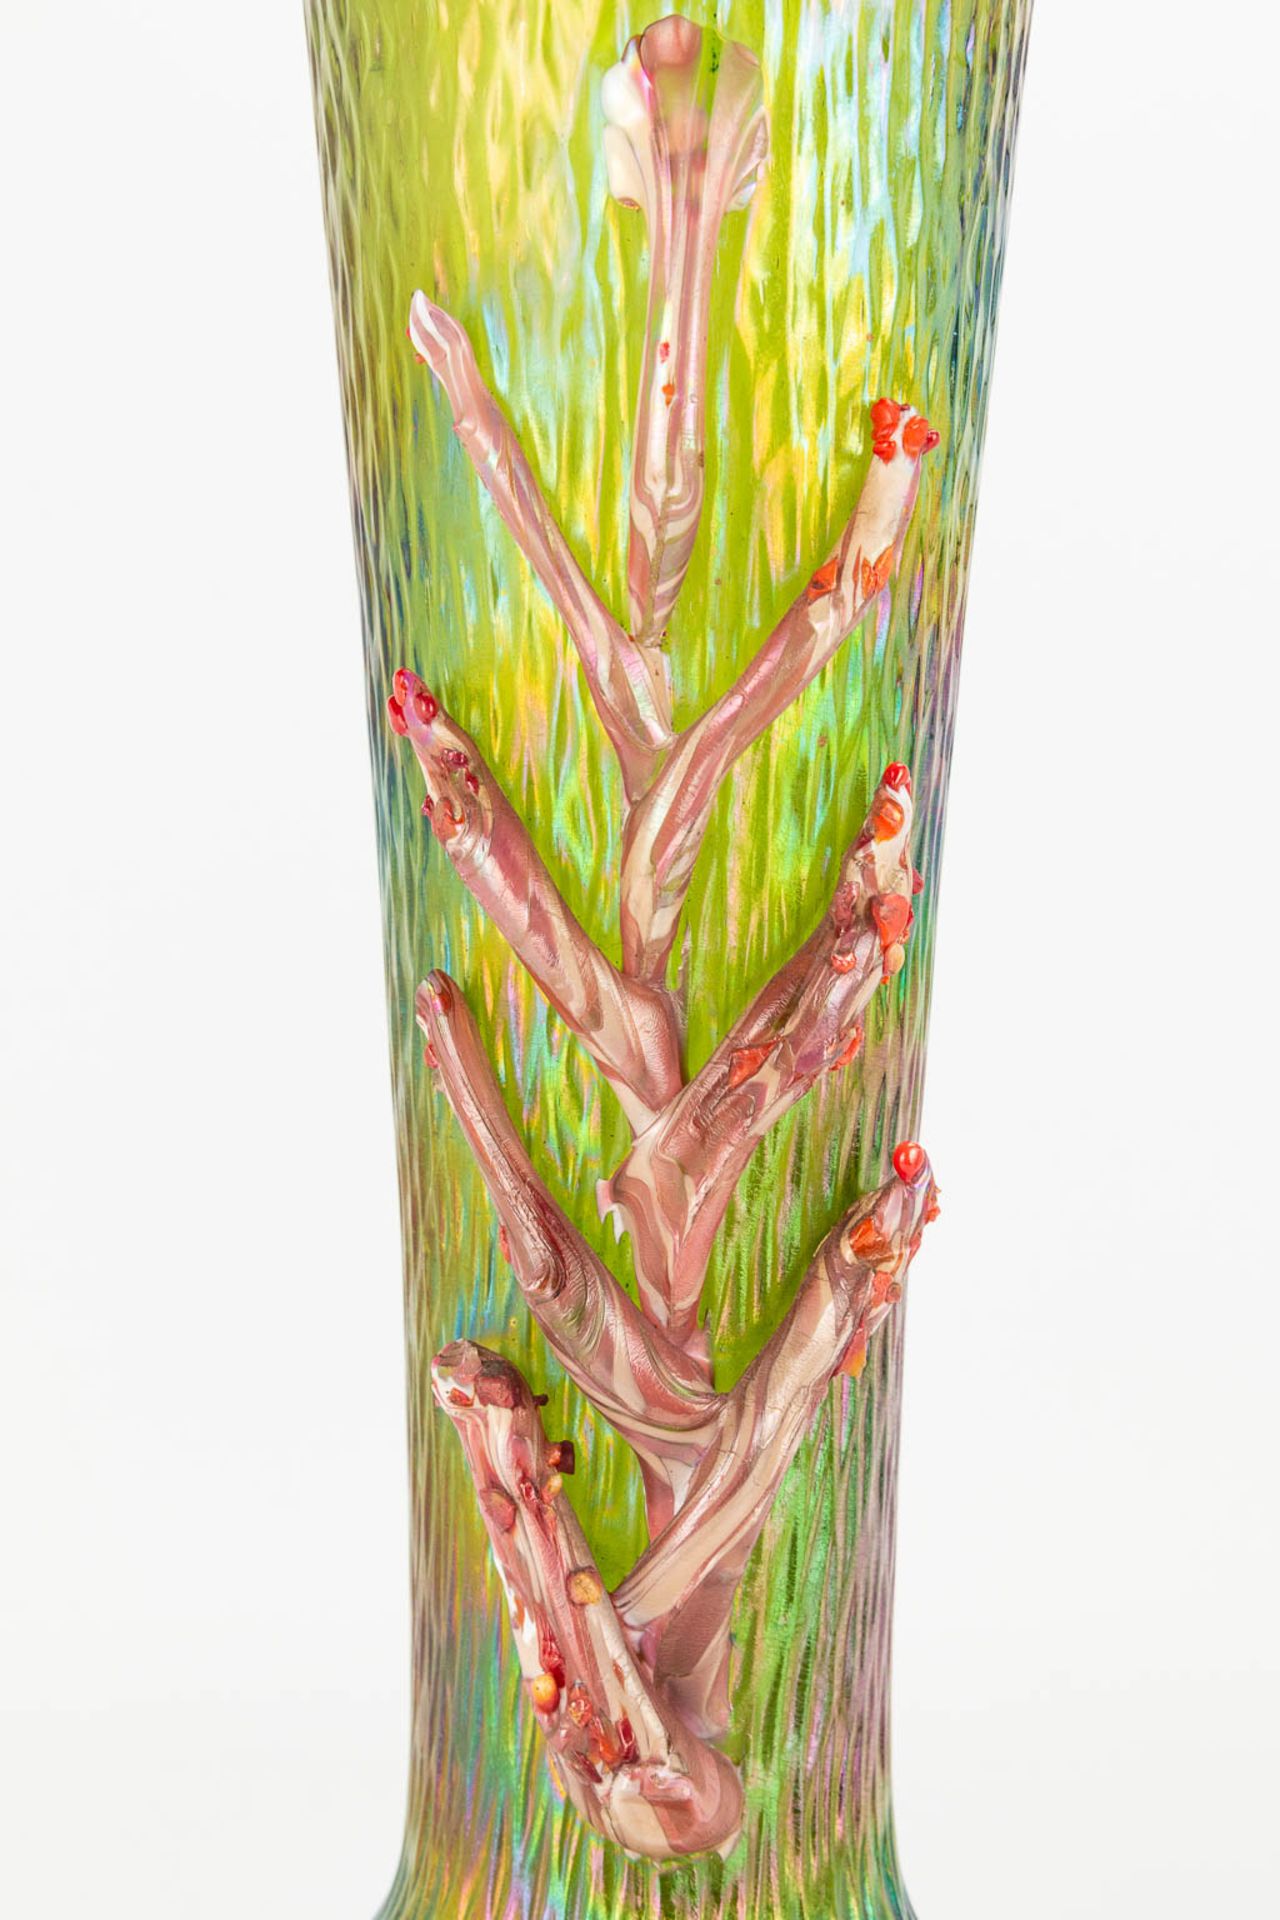 Pallme Kšnig a pair of p‰te de verre vases in art nouveau style. (H:27cm) - Image 8 of 17